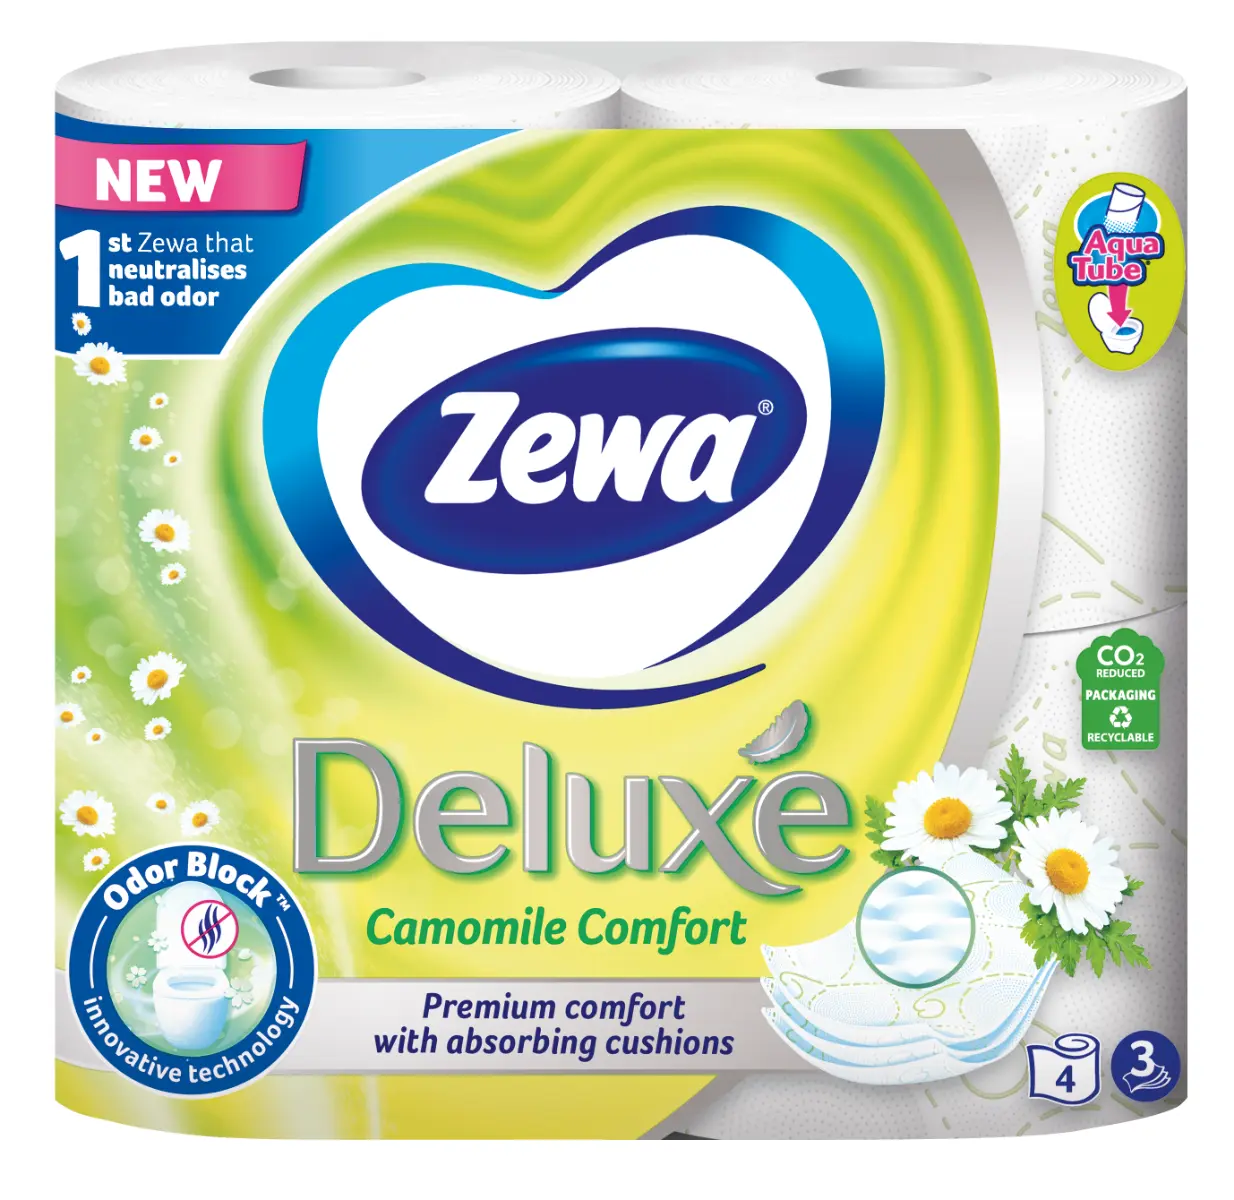 Hartie igienica Zewa Deluxe Camomile Comfort 4 role 3 straturi